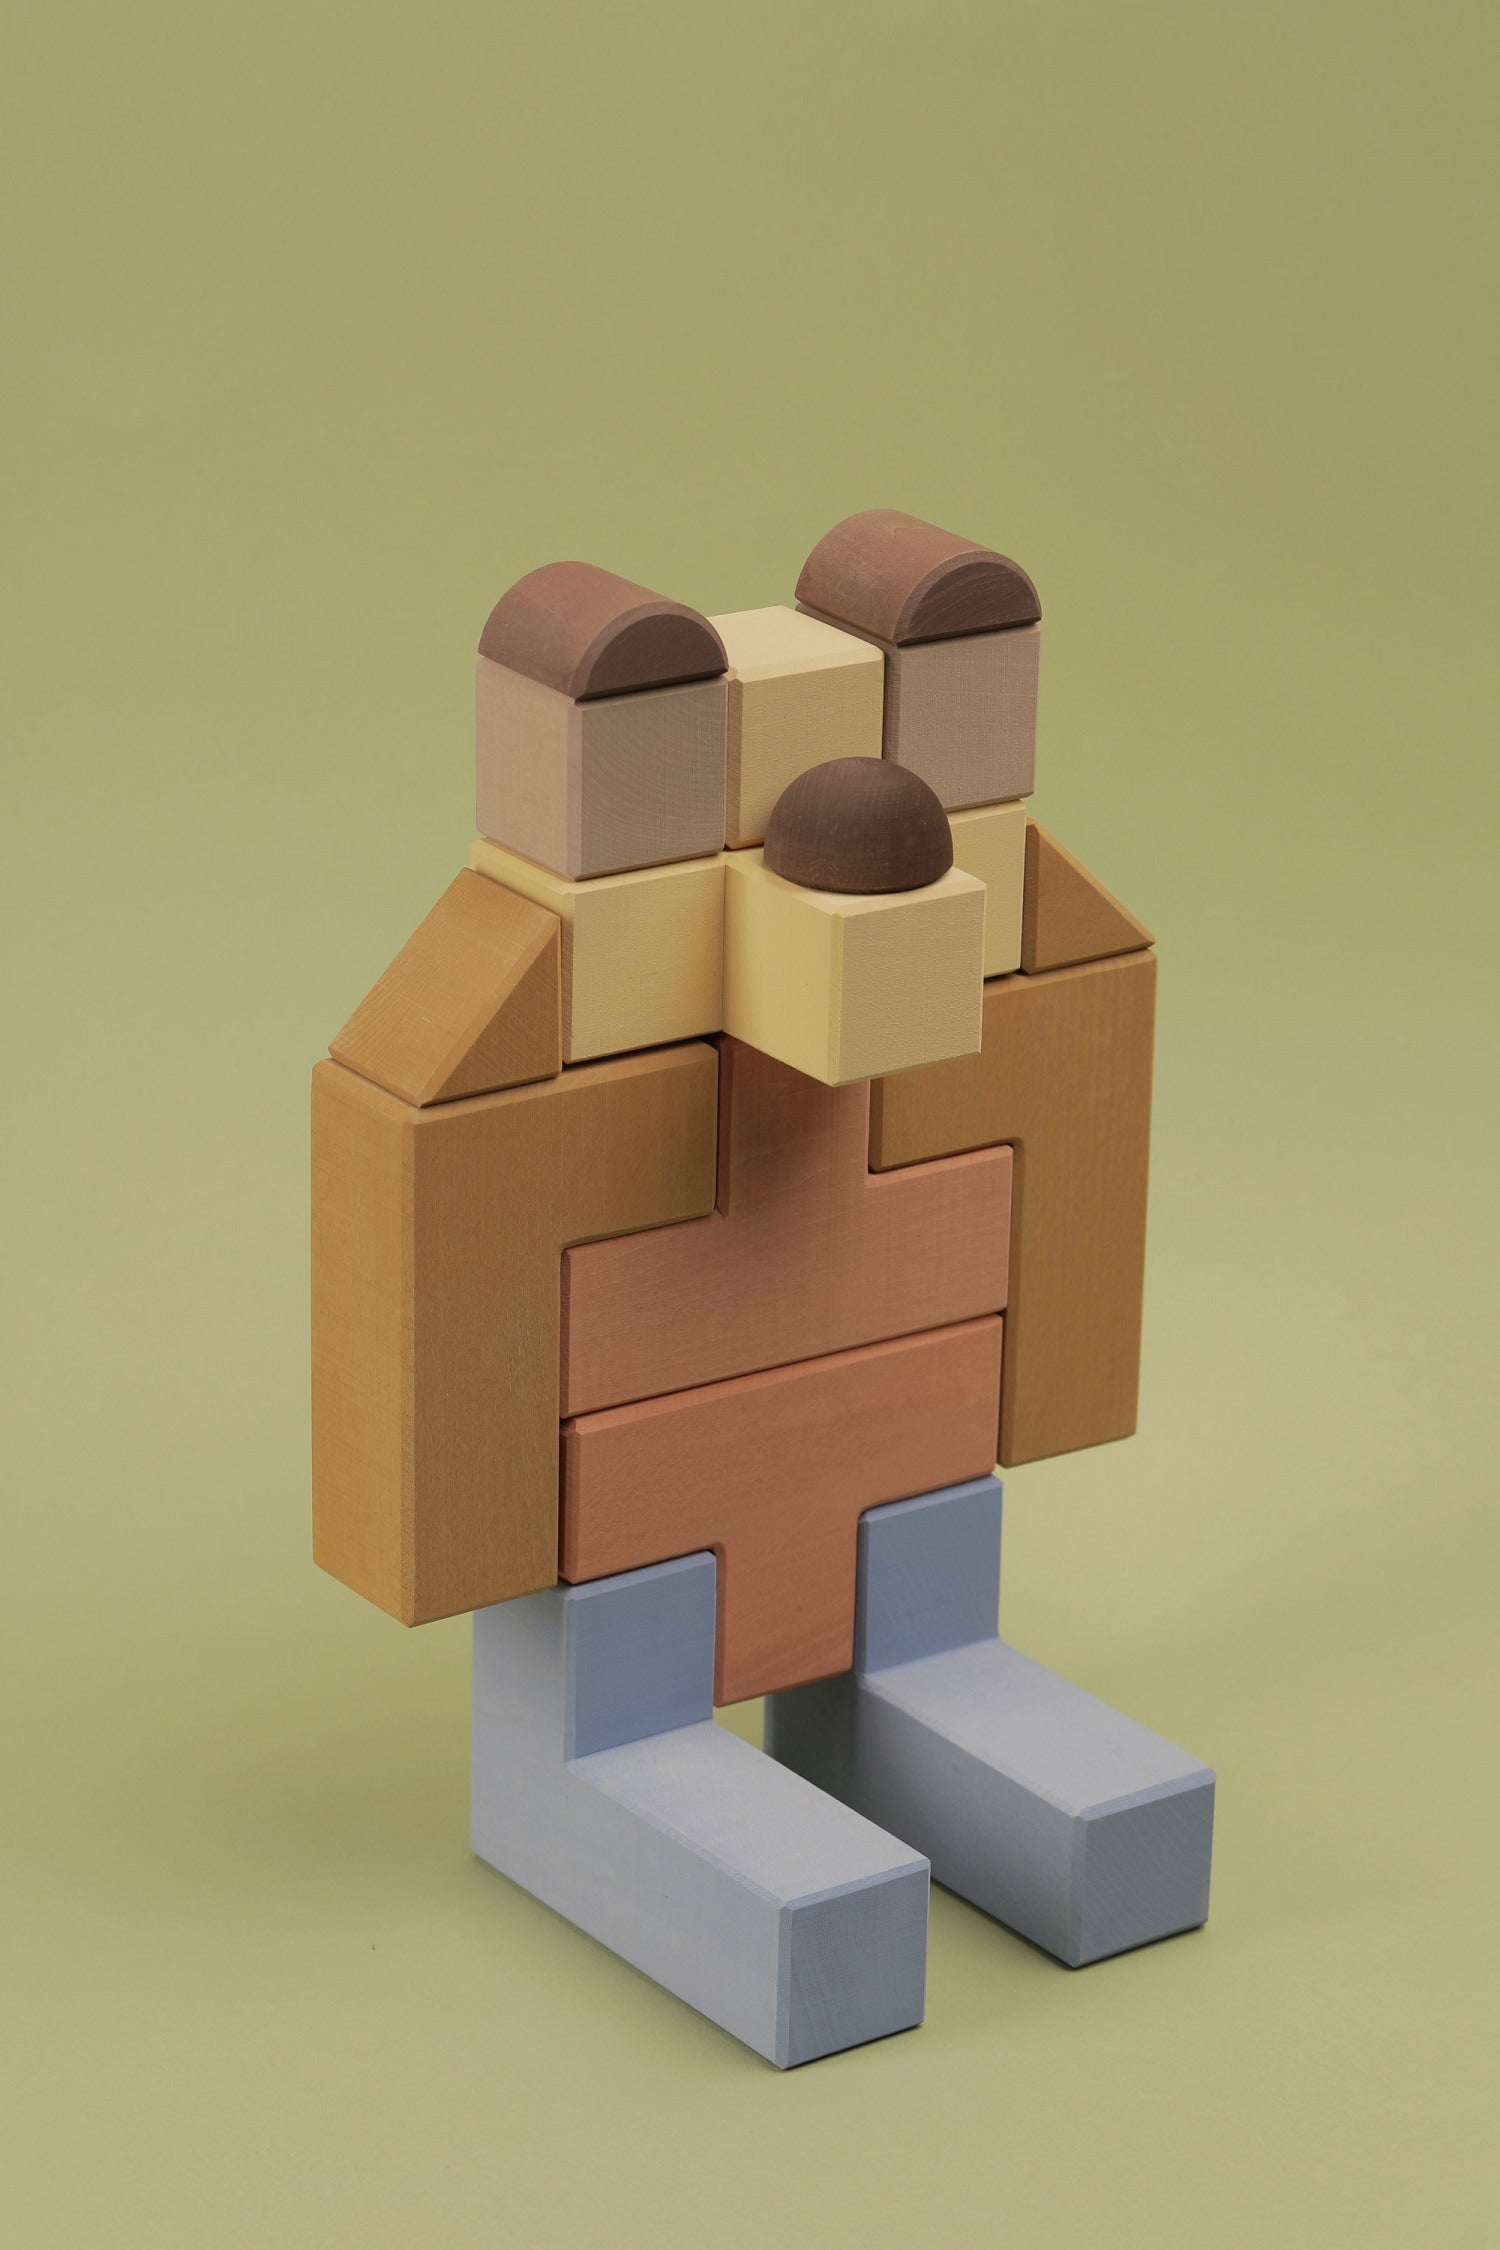 Animal Tetris Building Blocks